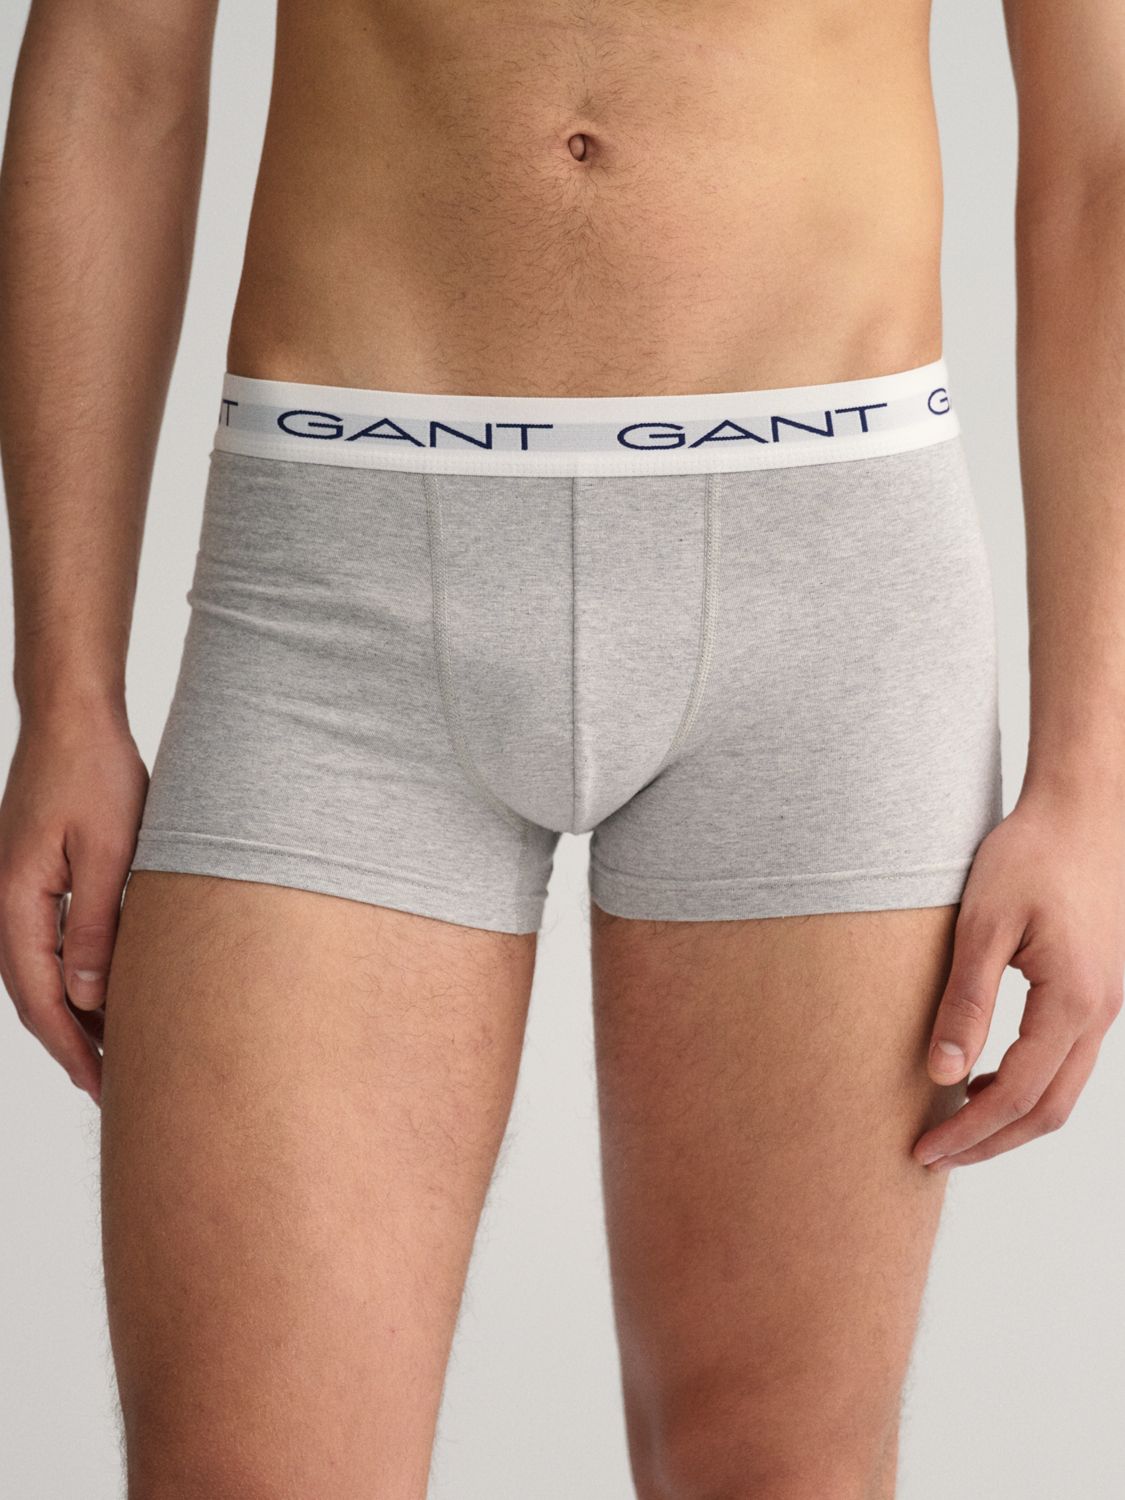 GANT Cotton Trunks, Pack of 3, Multi, XL